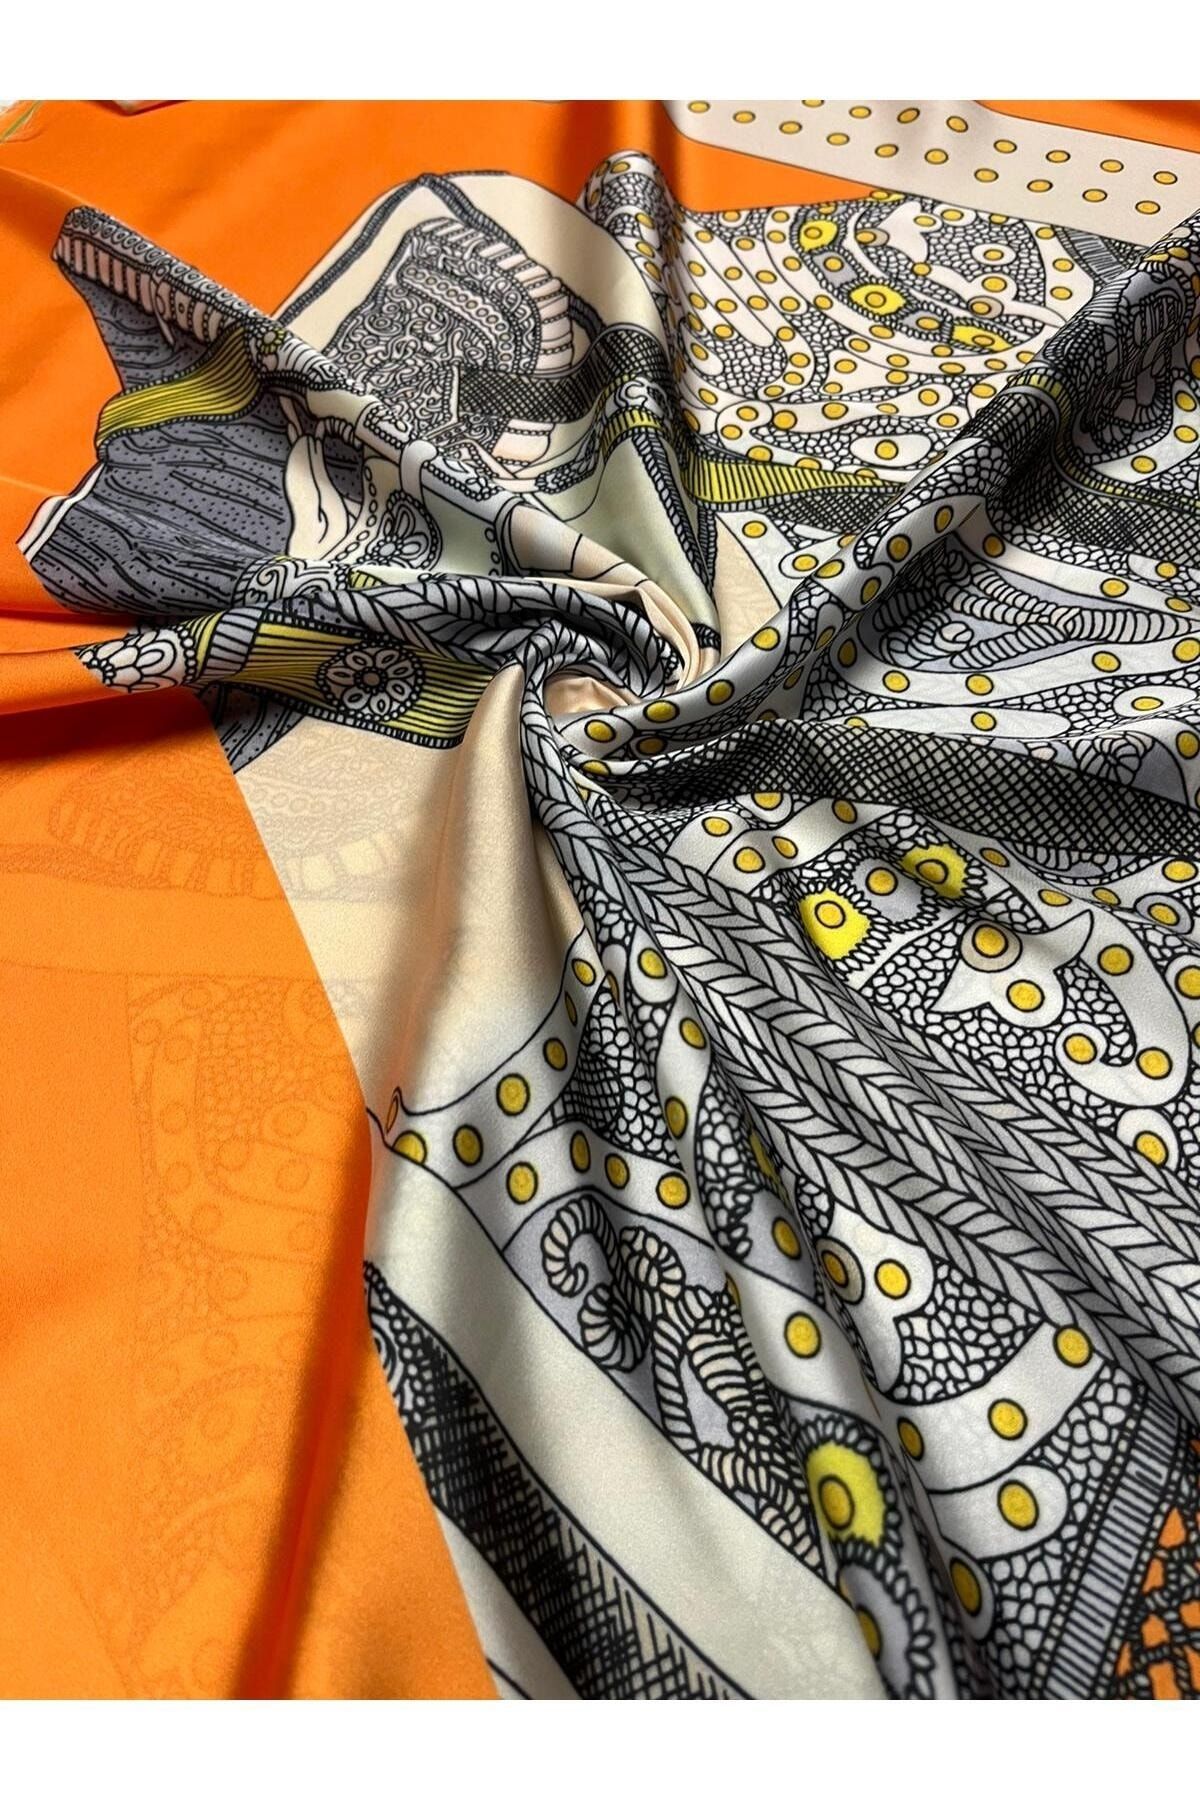 Kumaş sever İtalyan Etnik Desenli İpek Saten Elbise Gömlek Tunik Kimono Giyim Kumaş